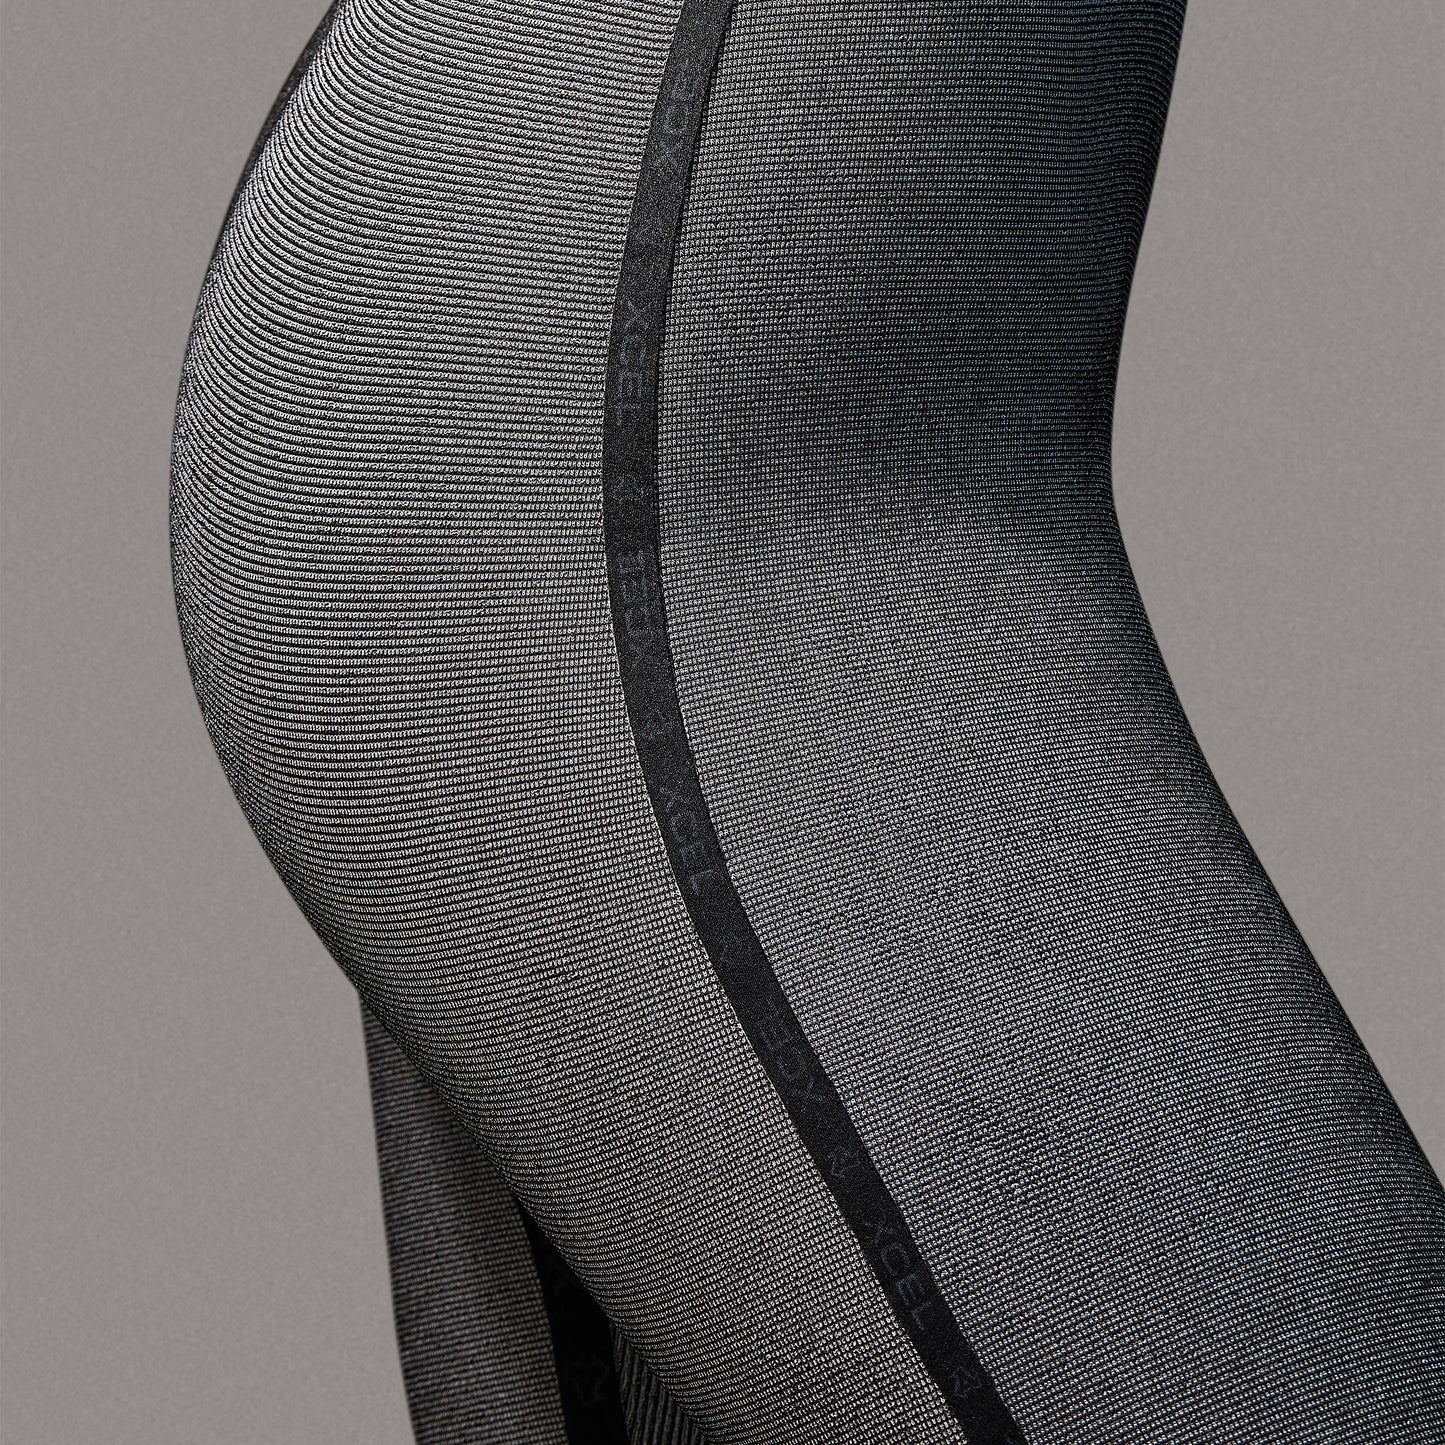 Women's Infiniti 5/4mm Hooded Full Wetsuit